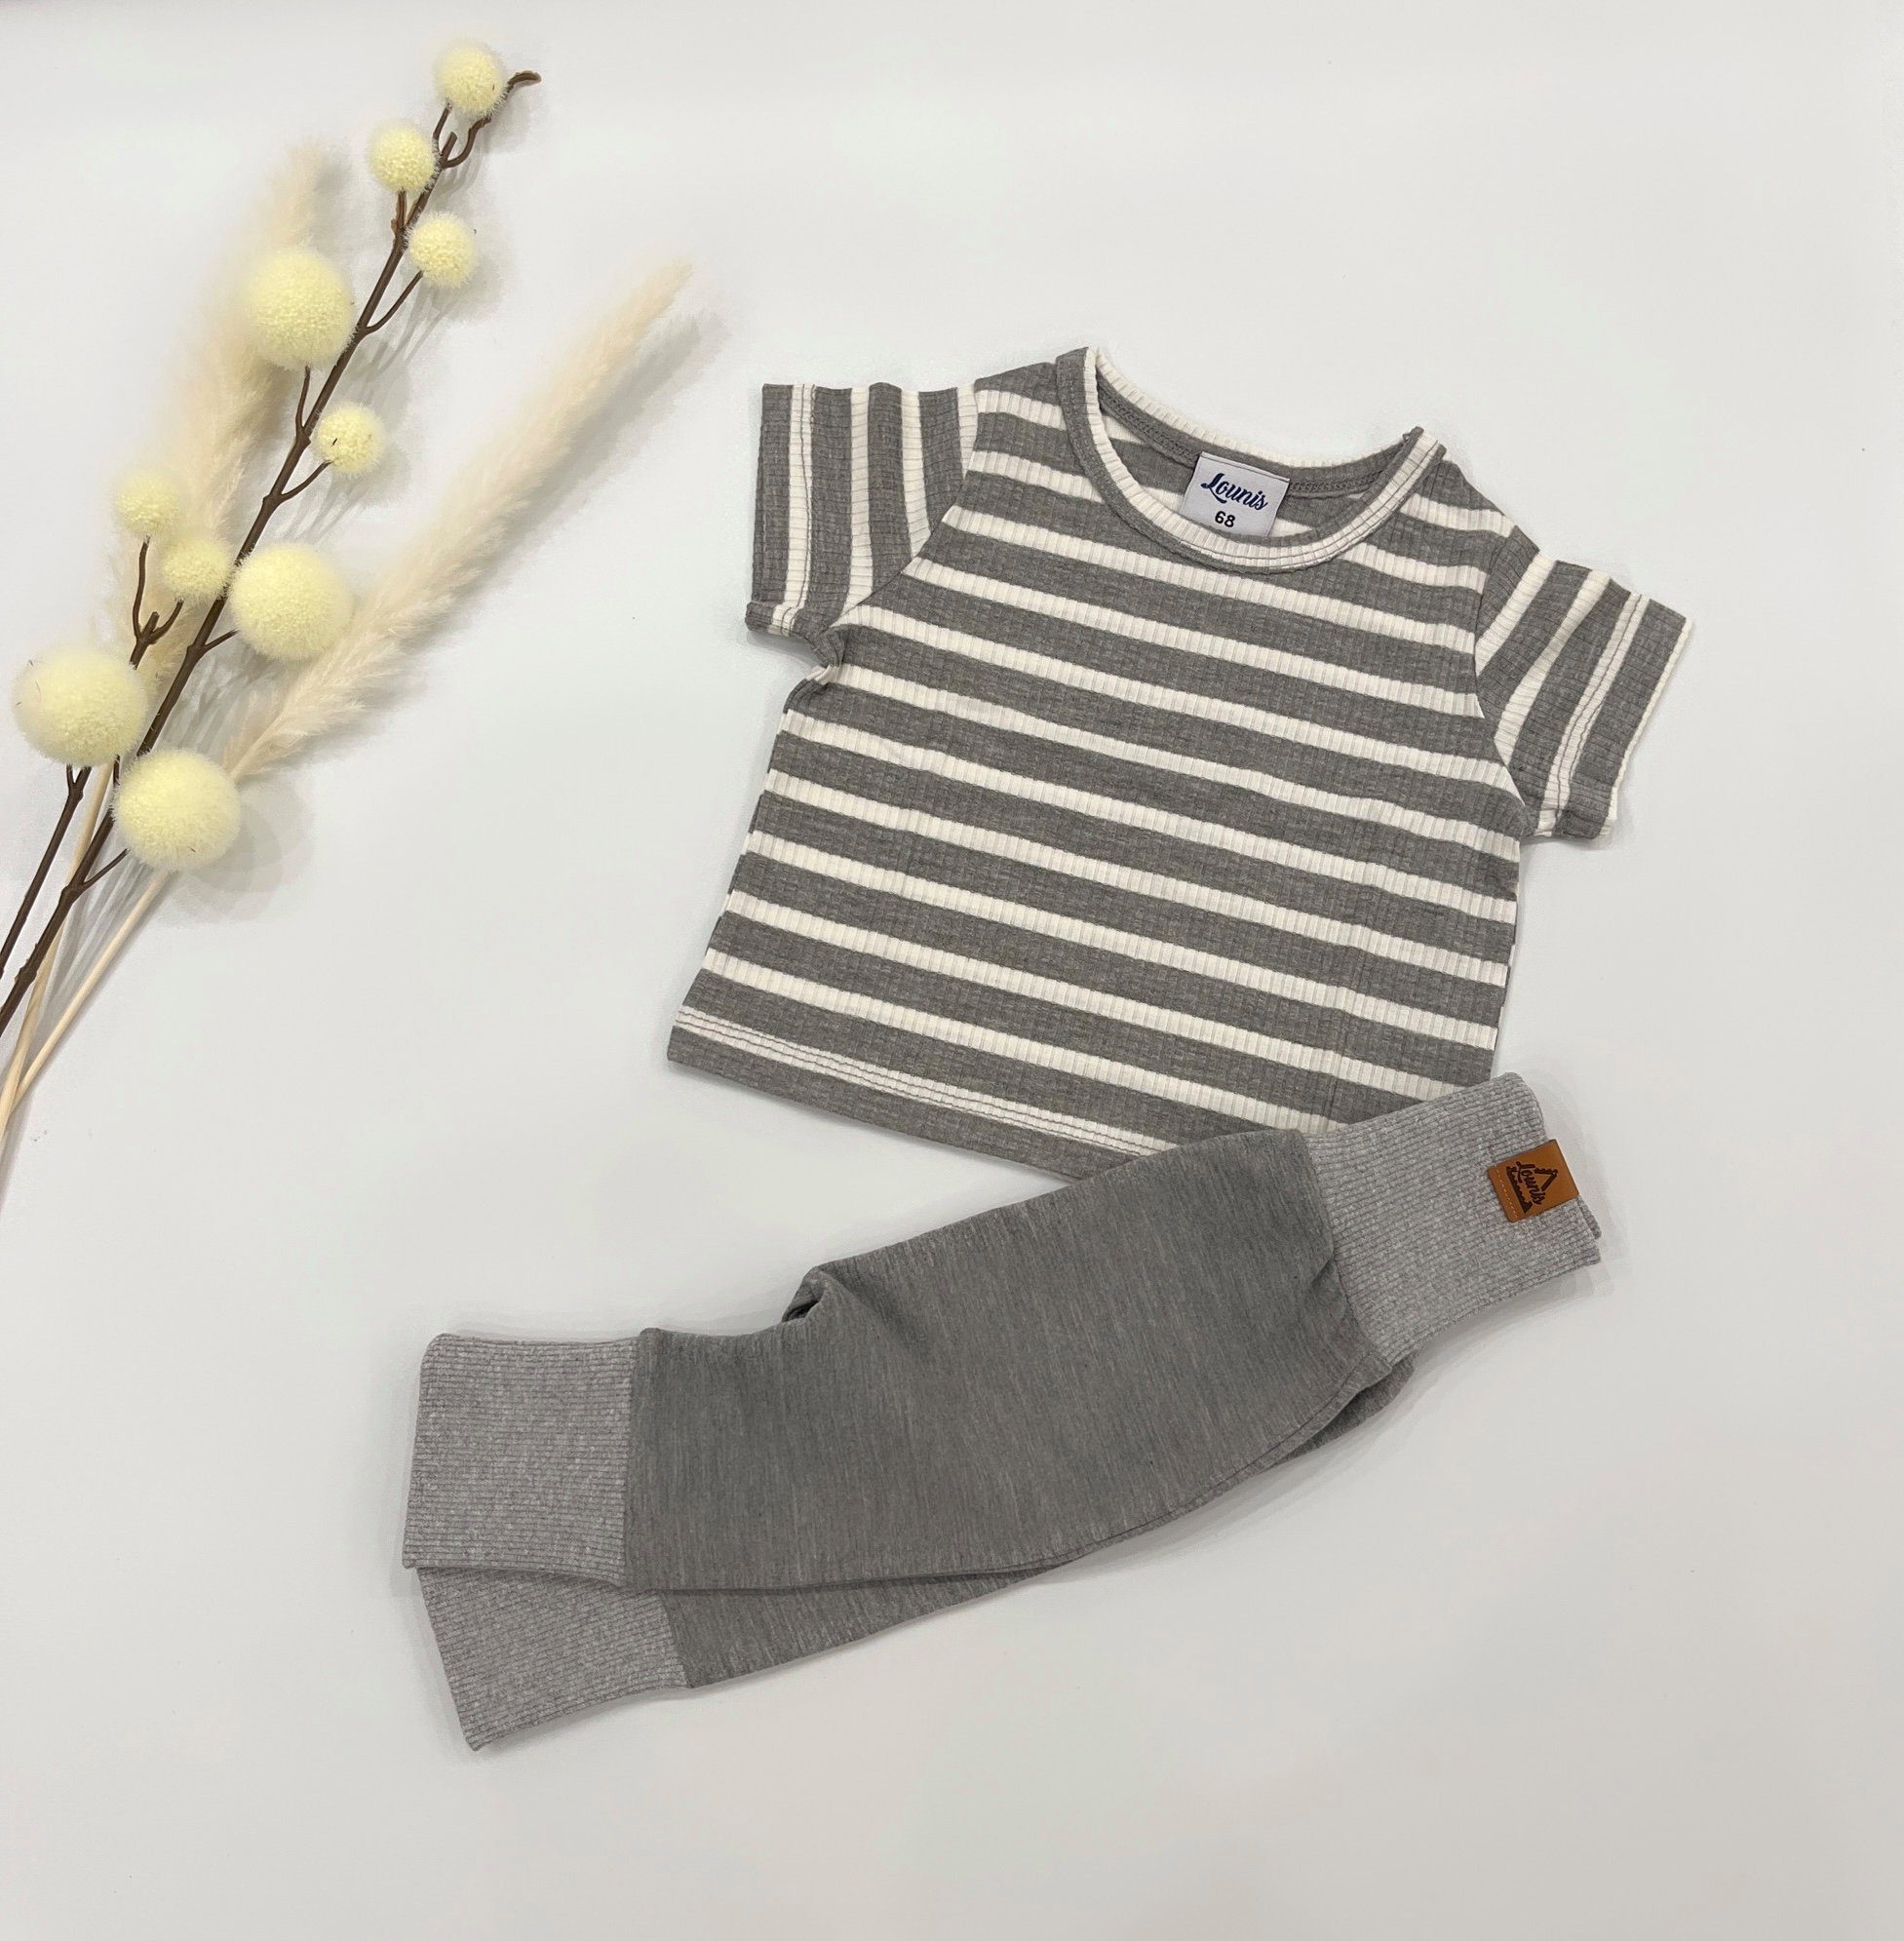 Lounis T-Shirt Kinder - - Baby - Shirt T-Shirt grau-weiß/gestreift Streifen